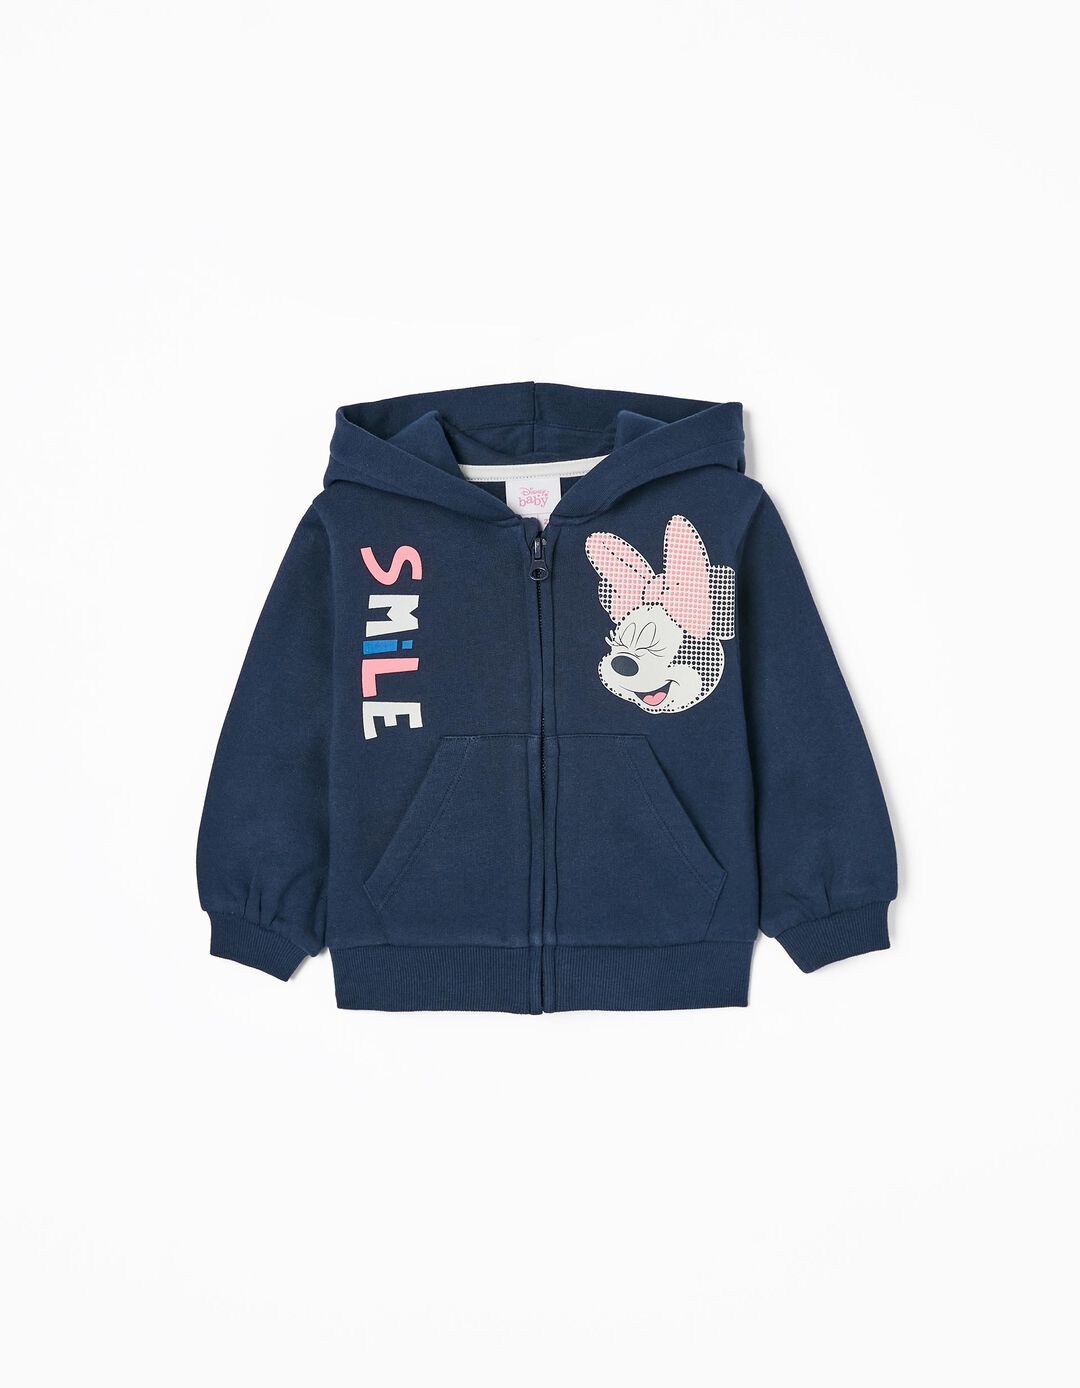 Cotton Hooded Jacket for Baby Girls 'Minnie', Dark Blue